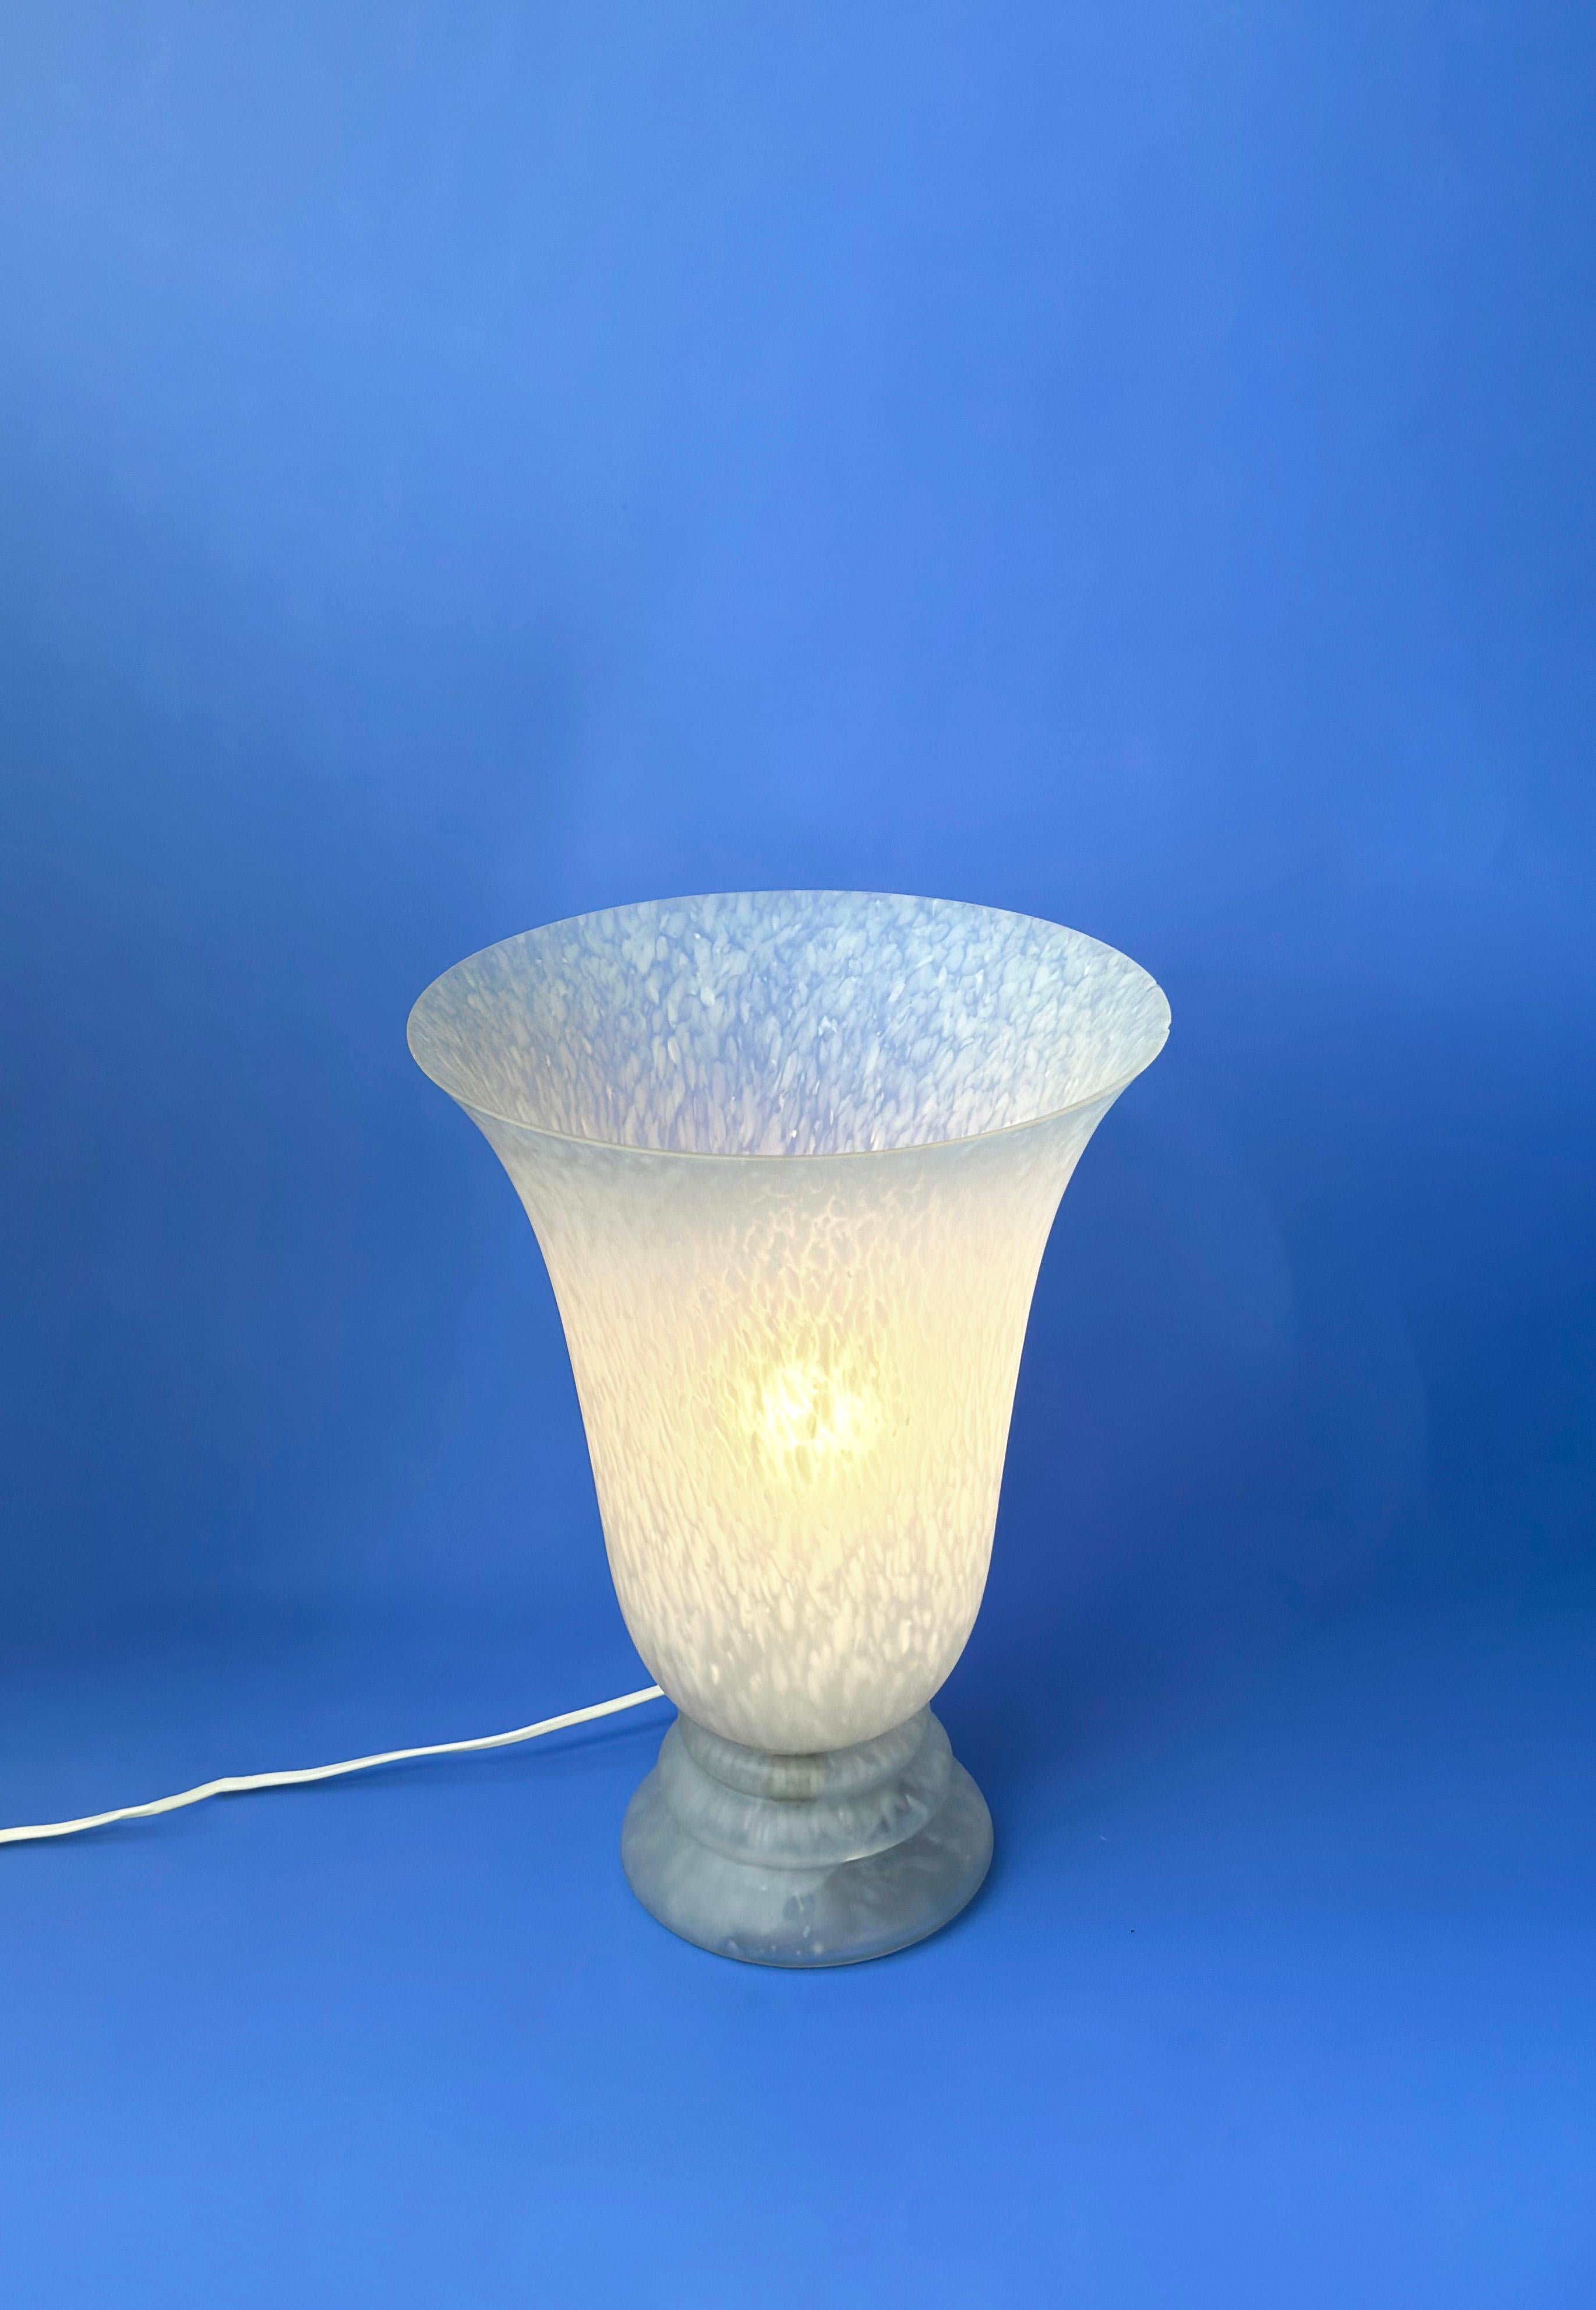 Lampe torchère en verre vintage de style art déco.

Fabriquée en verre roulé blanc et gris tourterelle, la lampe est constituée d'une seule pièce, à la fois l'abat-jour et la base, et témoigne d'un savant mélange de compétences en matière de